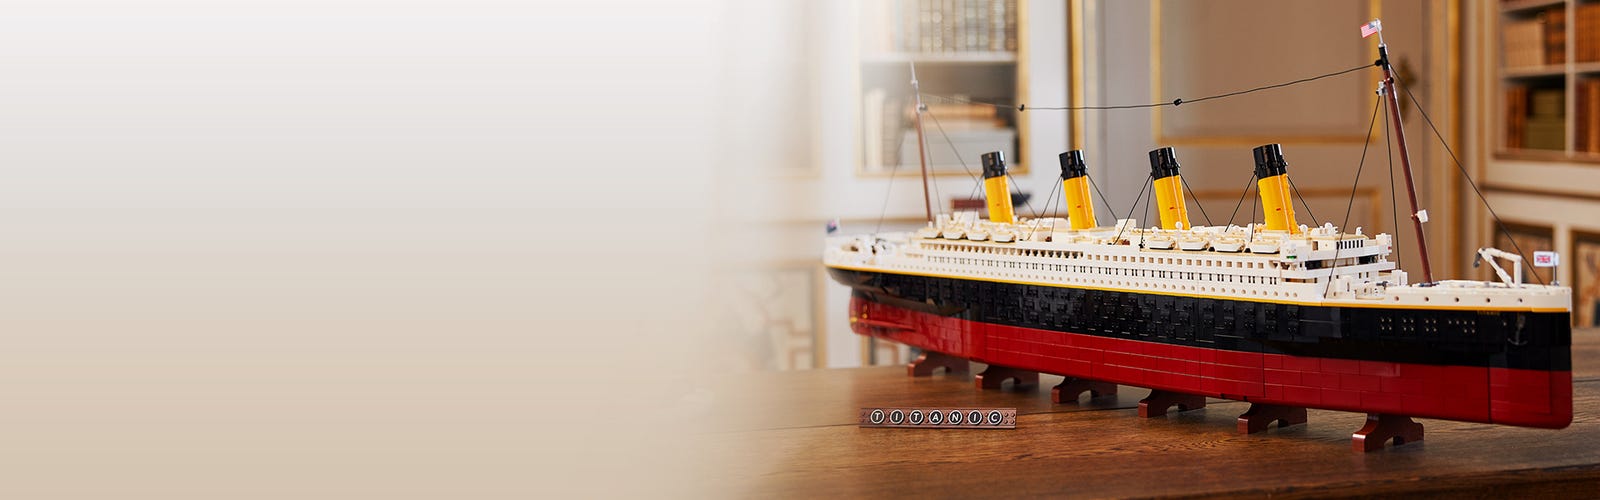 Lego Titanic 2021: prezzo e data di uscita del set più grande di sempre 